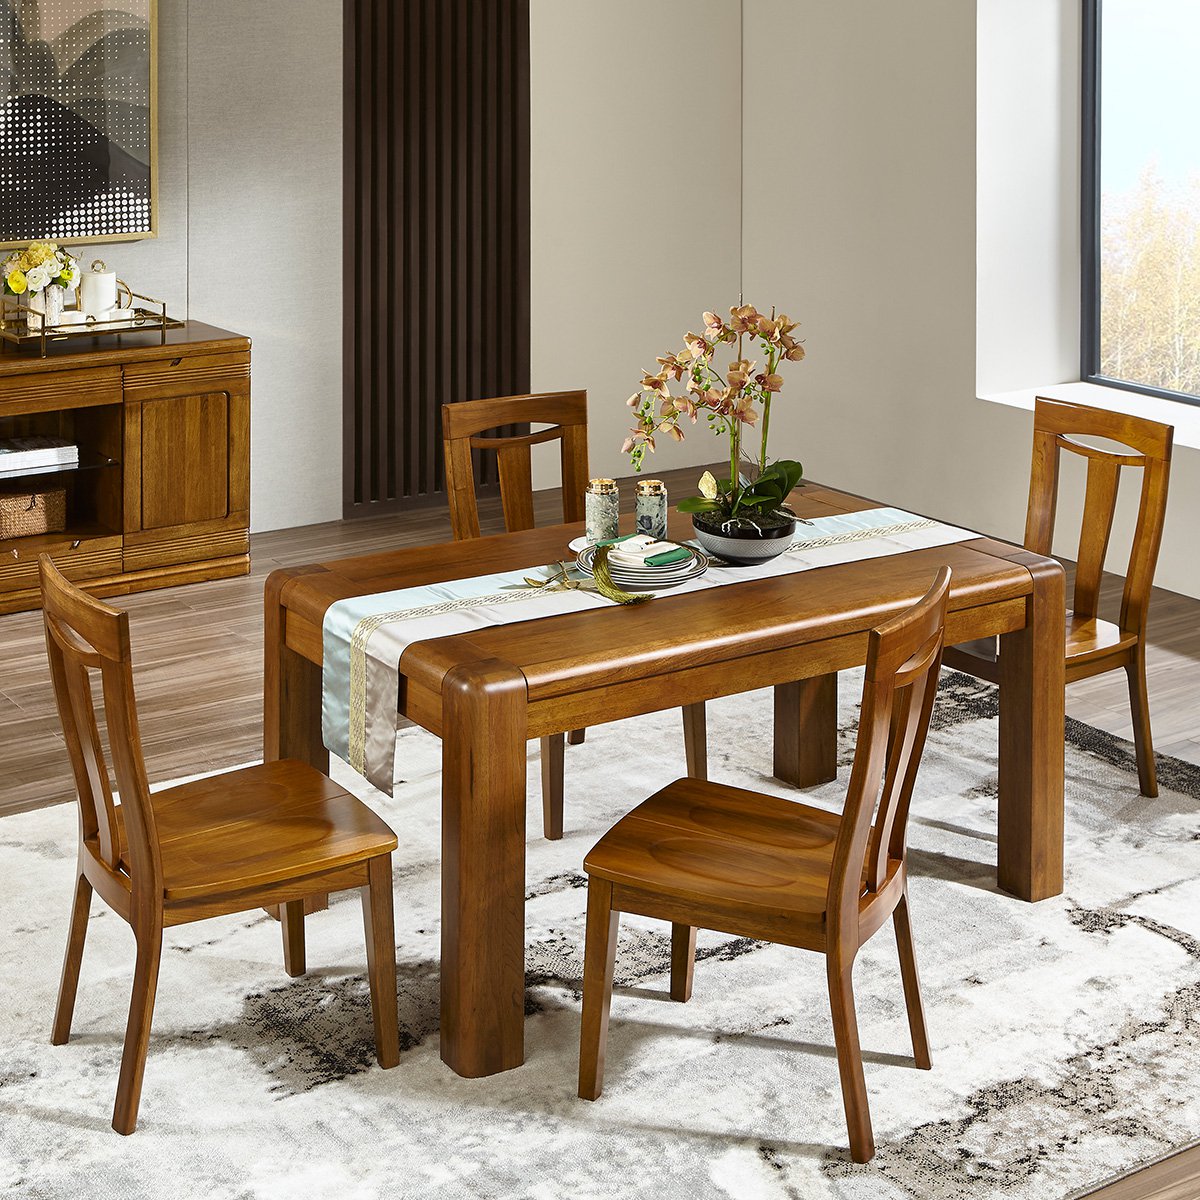 现代中式全实木抽屉餐桌4人饭桌一桌四椅组合胡桃木餐厅家具mn303